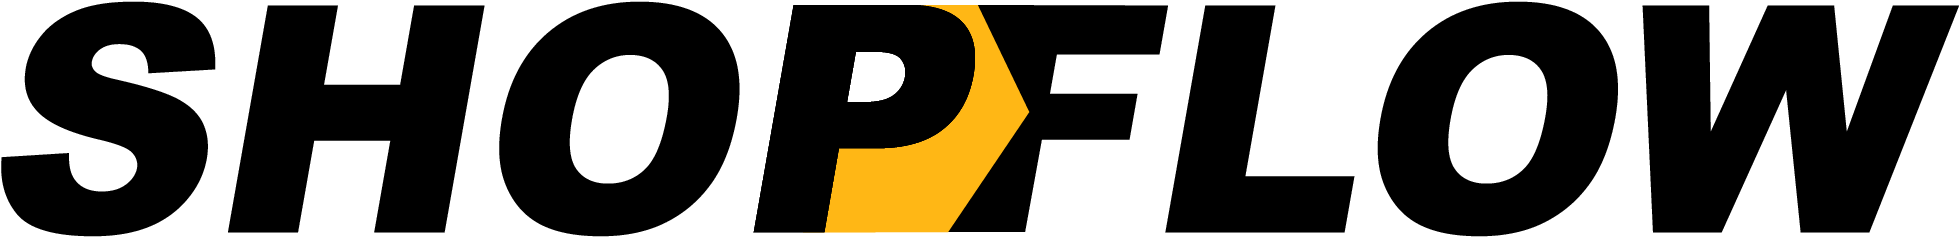 Shopflow logo